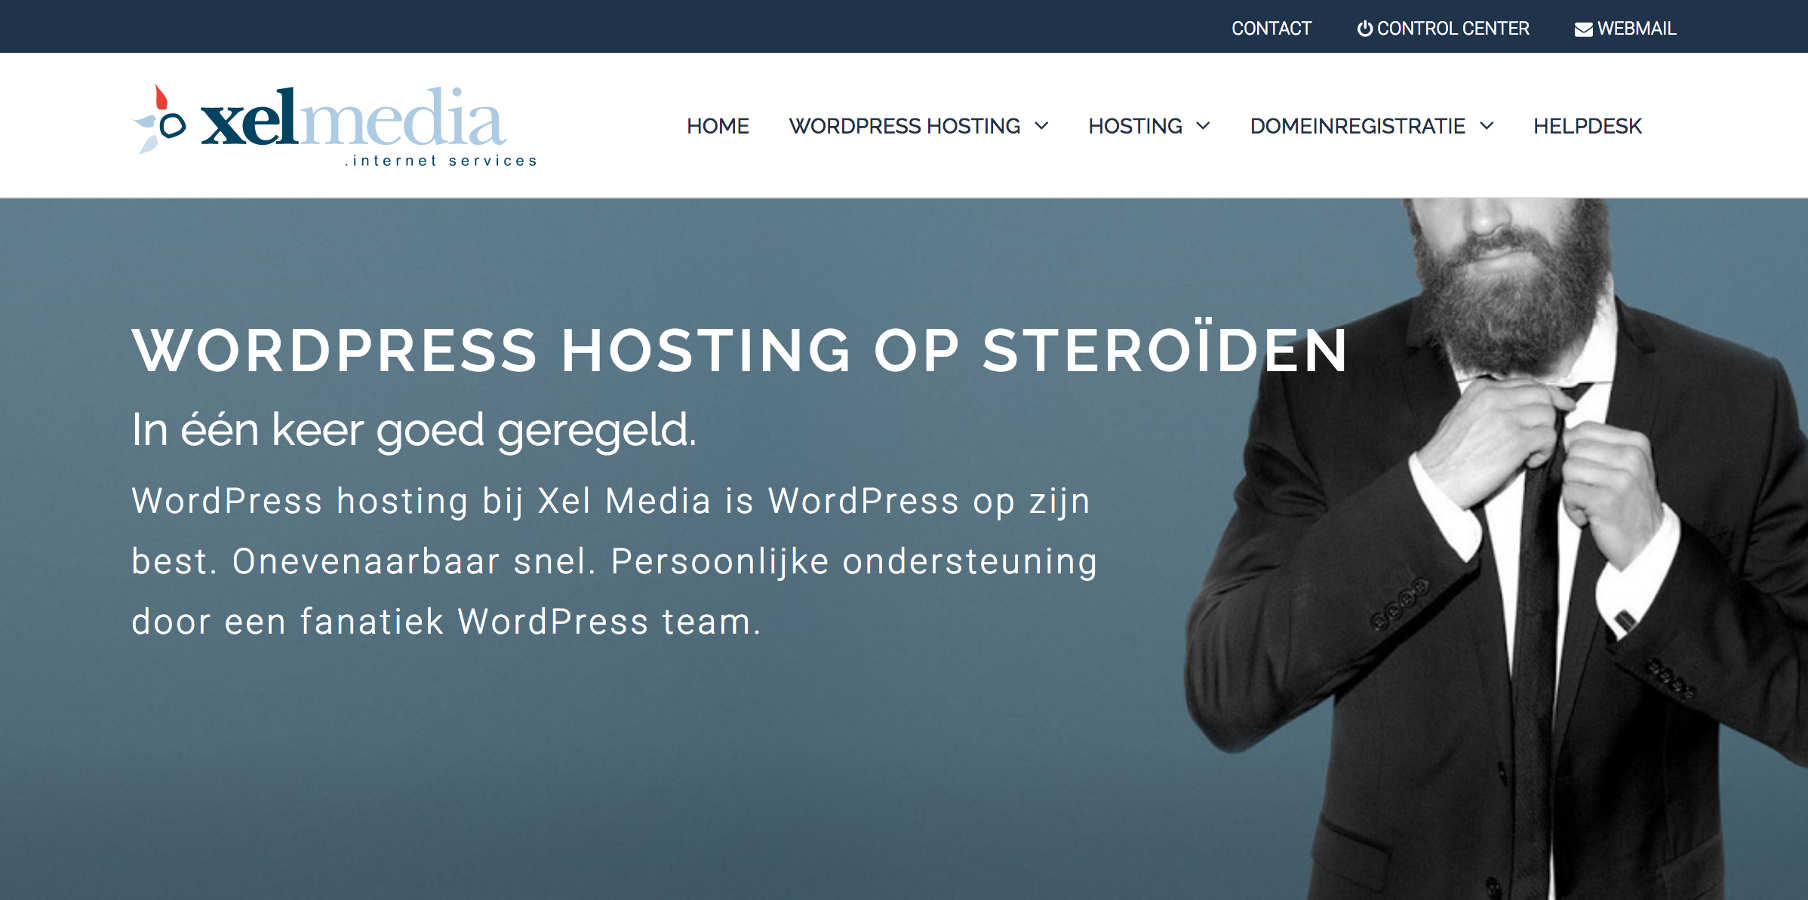 Xel Media WordPress hosting homepage